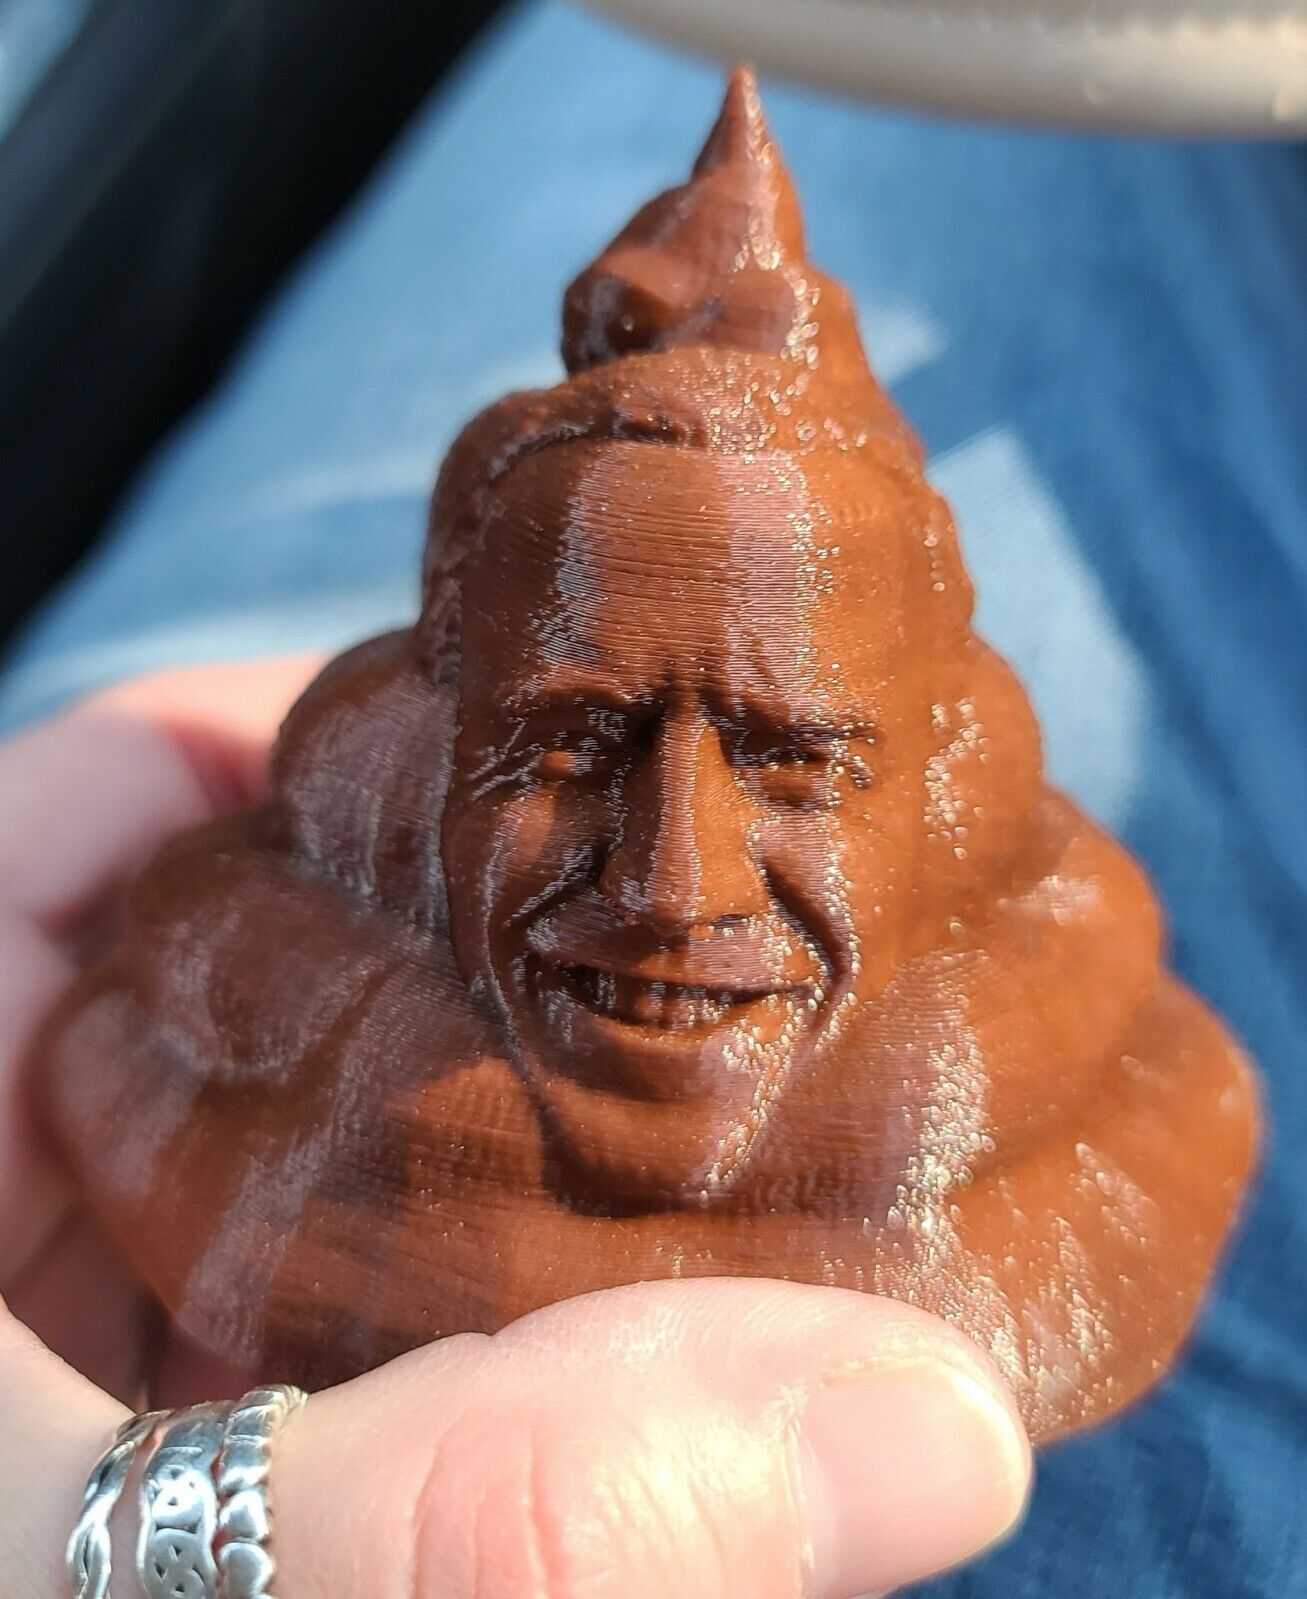 Joe Biden Poo 3D Printed President Turd FJB TRUMP 2024